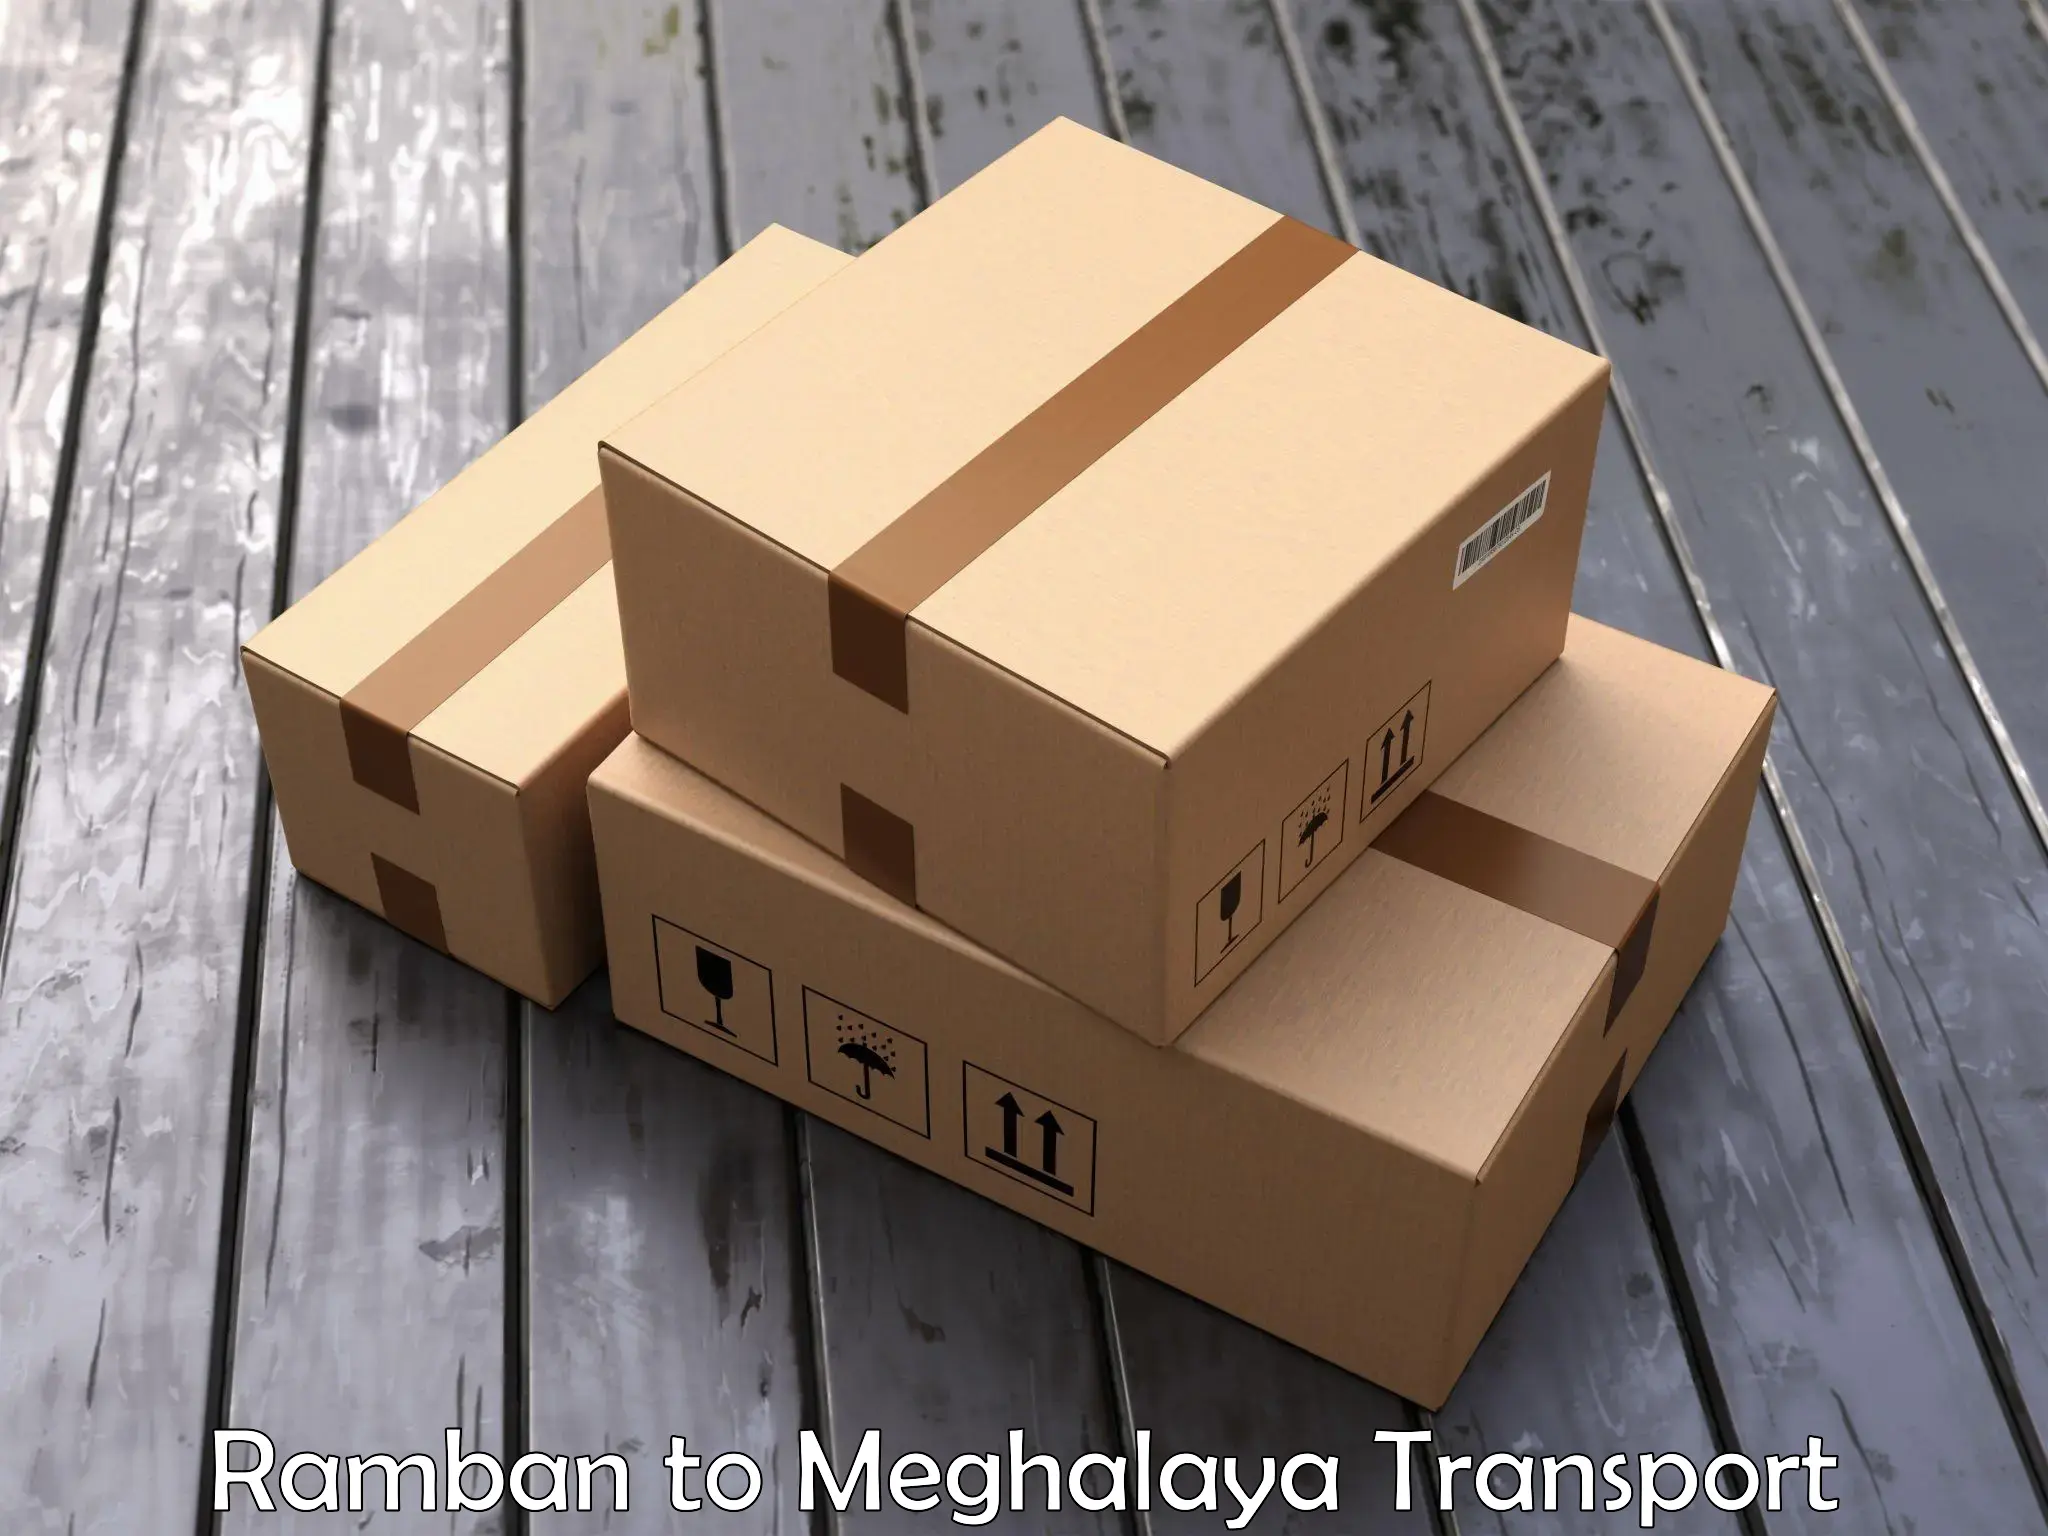 Furniture transport service Ramban to Dkhiah West